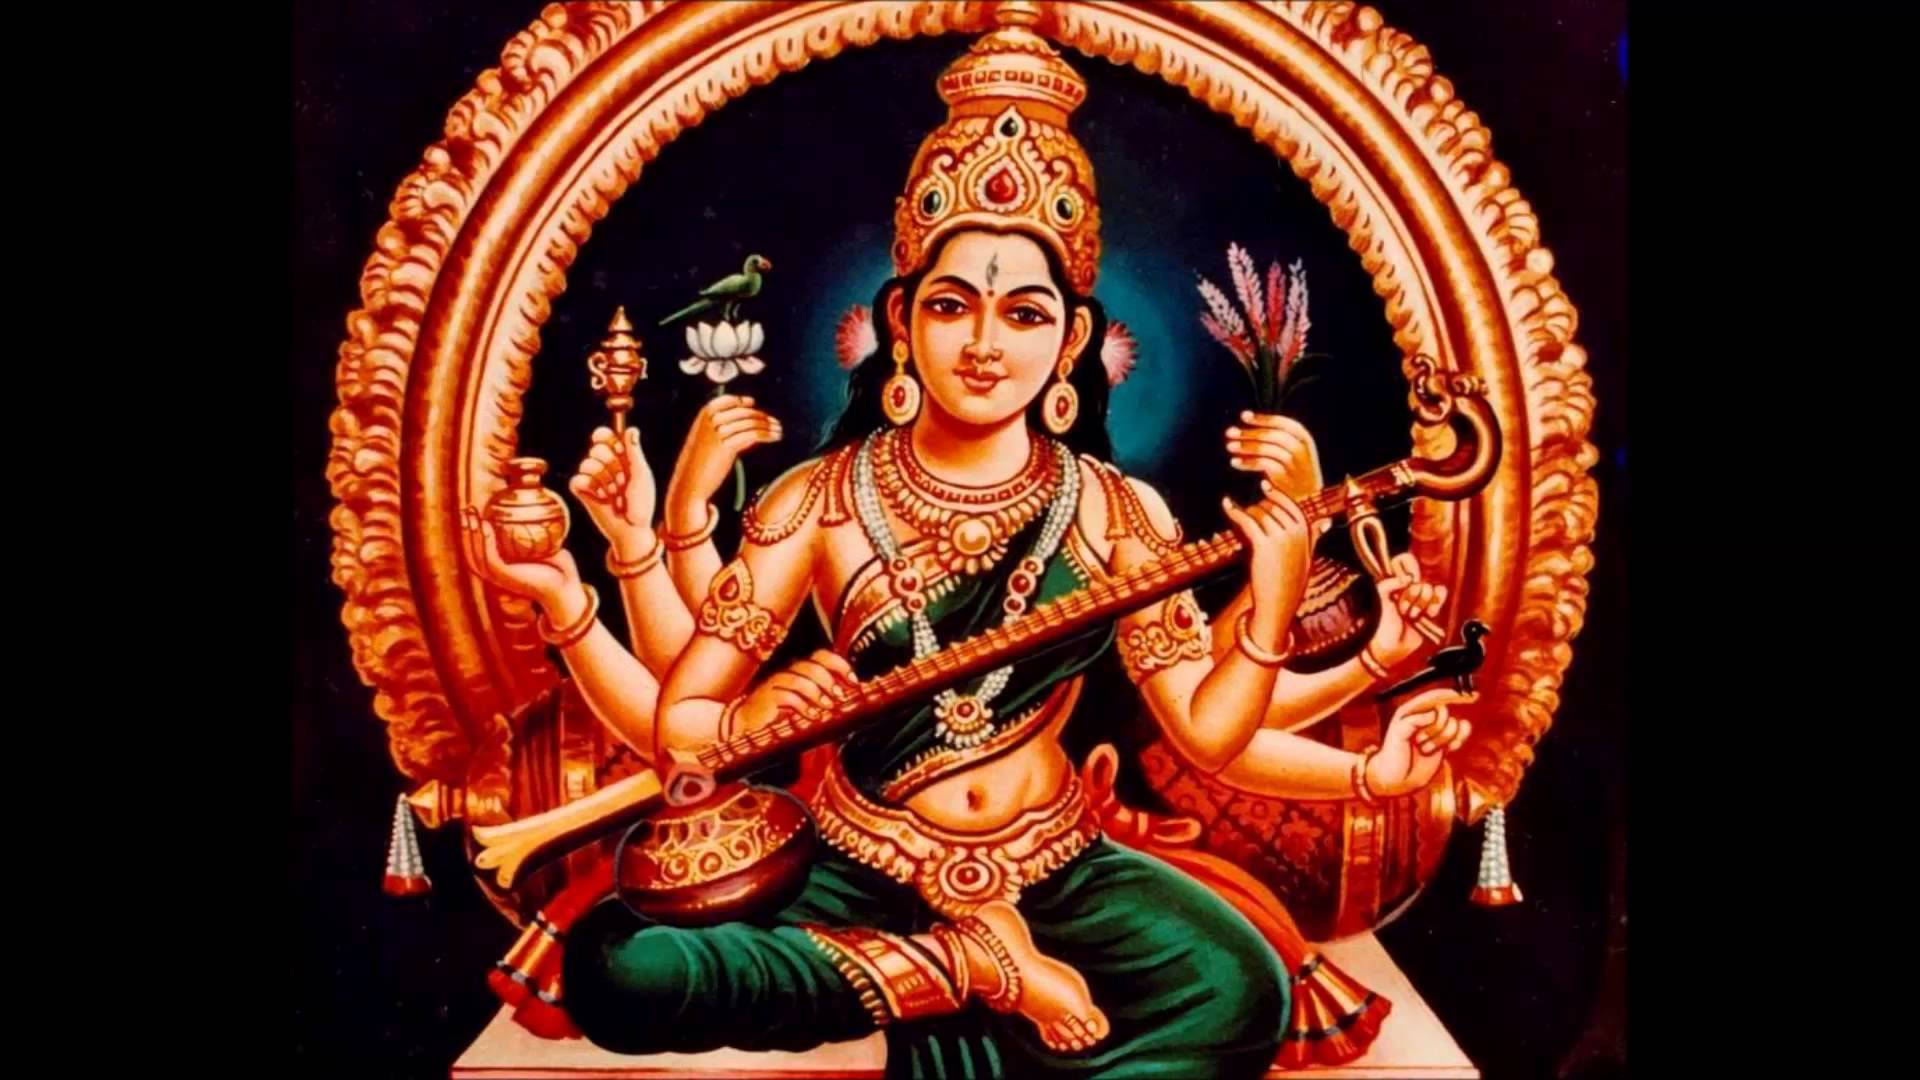 Hindu Goddess Wallpaper